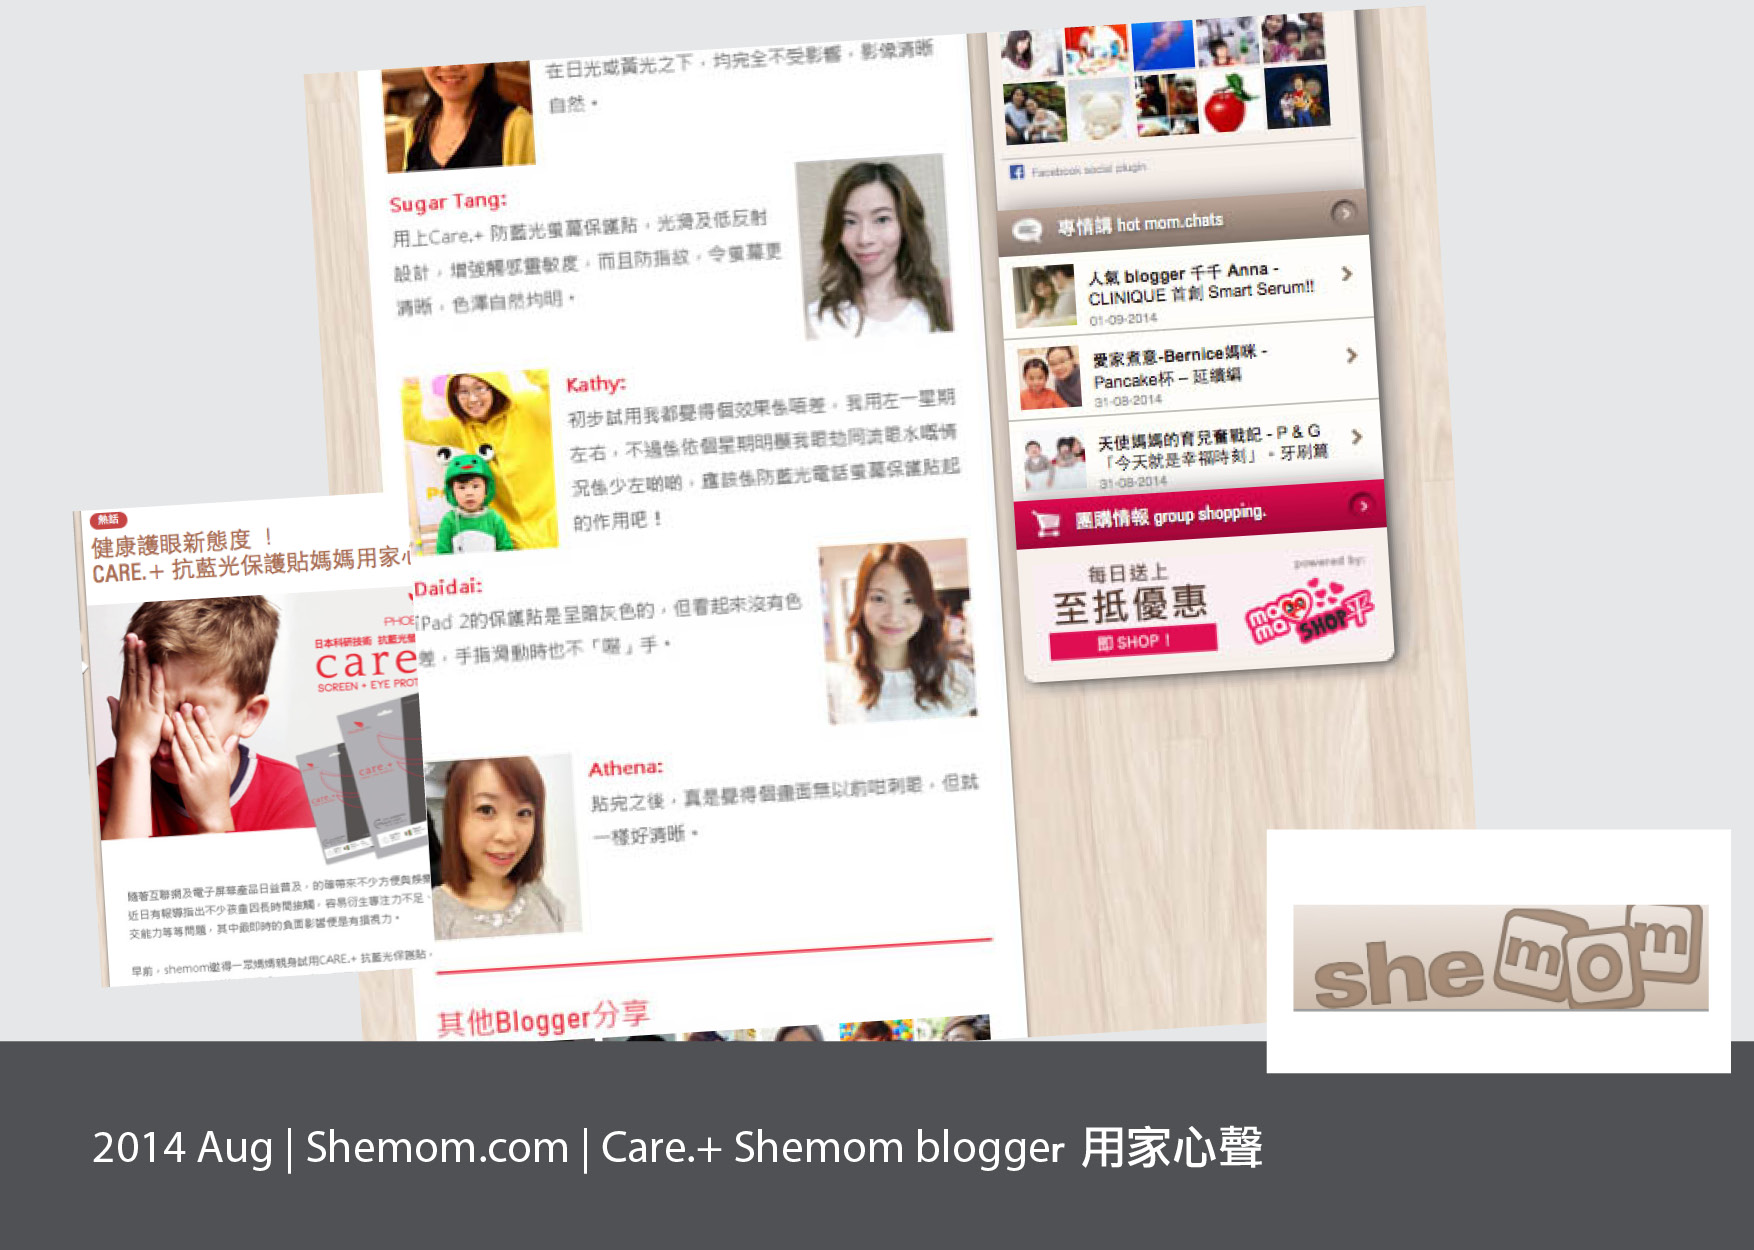 Shemom.com, Care.+ blogger 用家心聲